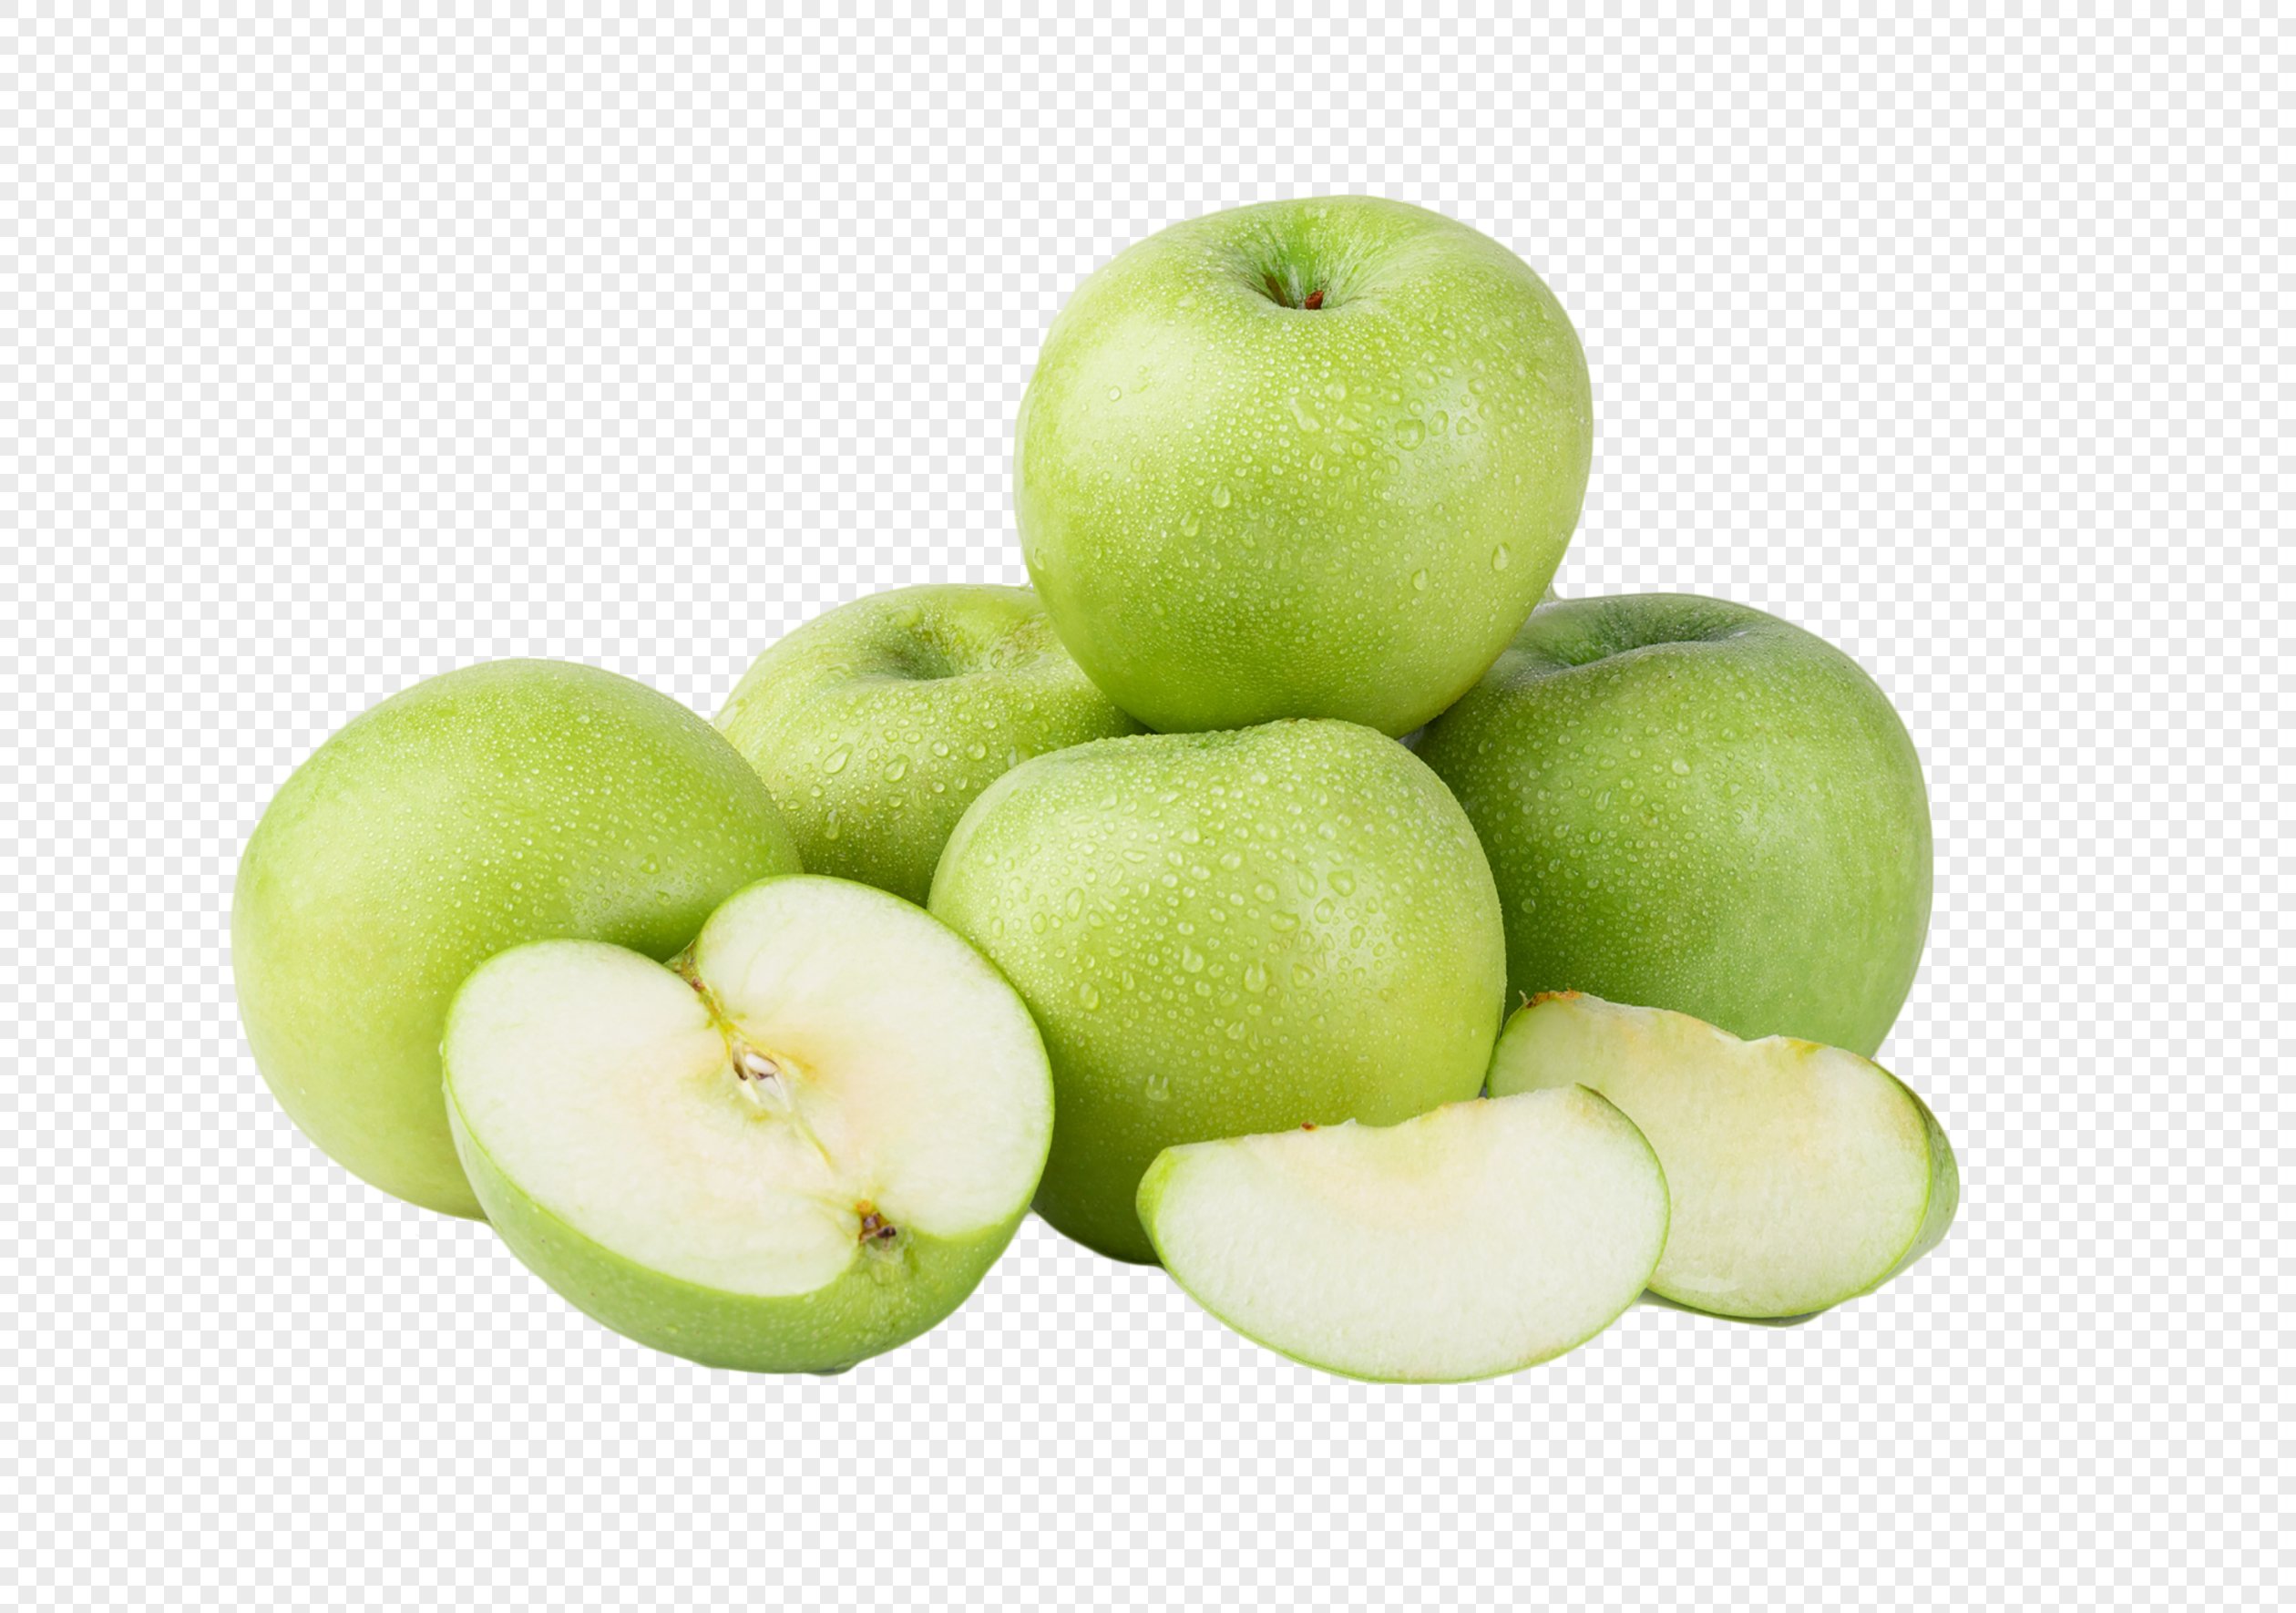 Táo xanh (Green apples): Táo xanh là một trong những loại trái cây tươi ngon và bổ dưỡng nhất. Họa sĩ đã tái hiện các hình ảnh táo xanh với độ phân giải cao và nền trong suốt, giúp bạn nhìn thấy từng chi tiết của trái cây này.